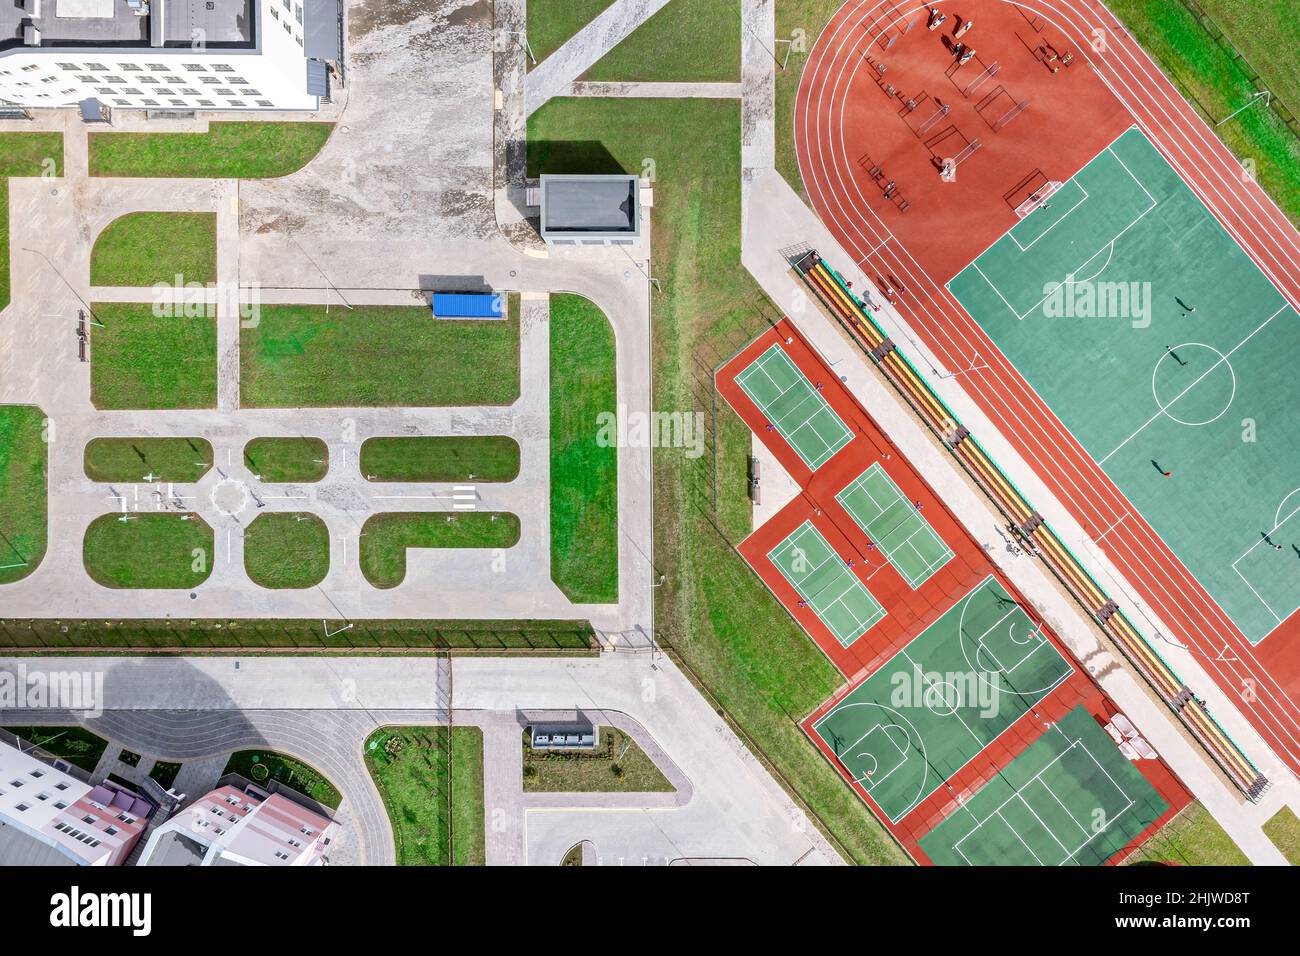 vue aérienne sur la cour de l'école avec de nouveaux terrains de sport pour les jeux d'équipe de sport. photo de drone. Banque D'Images